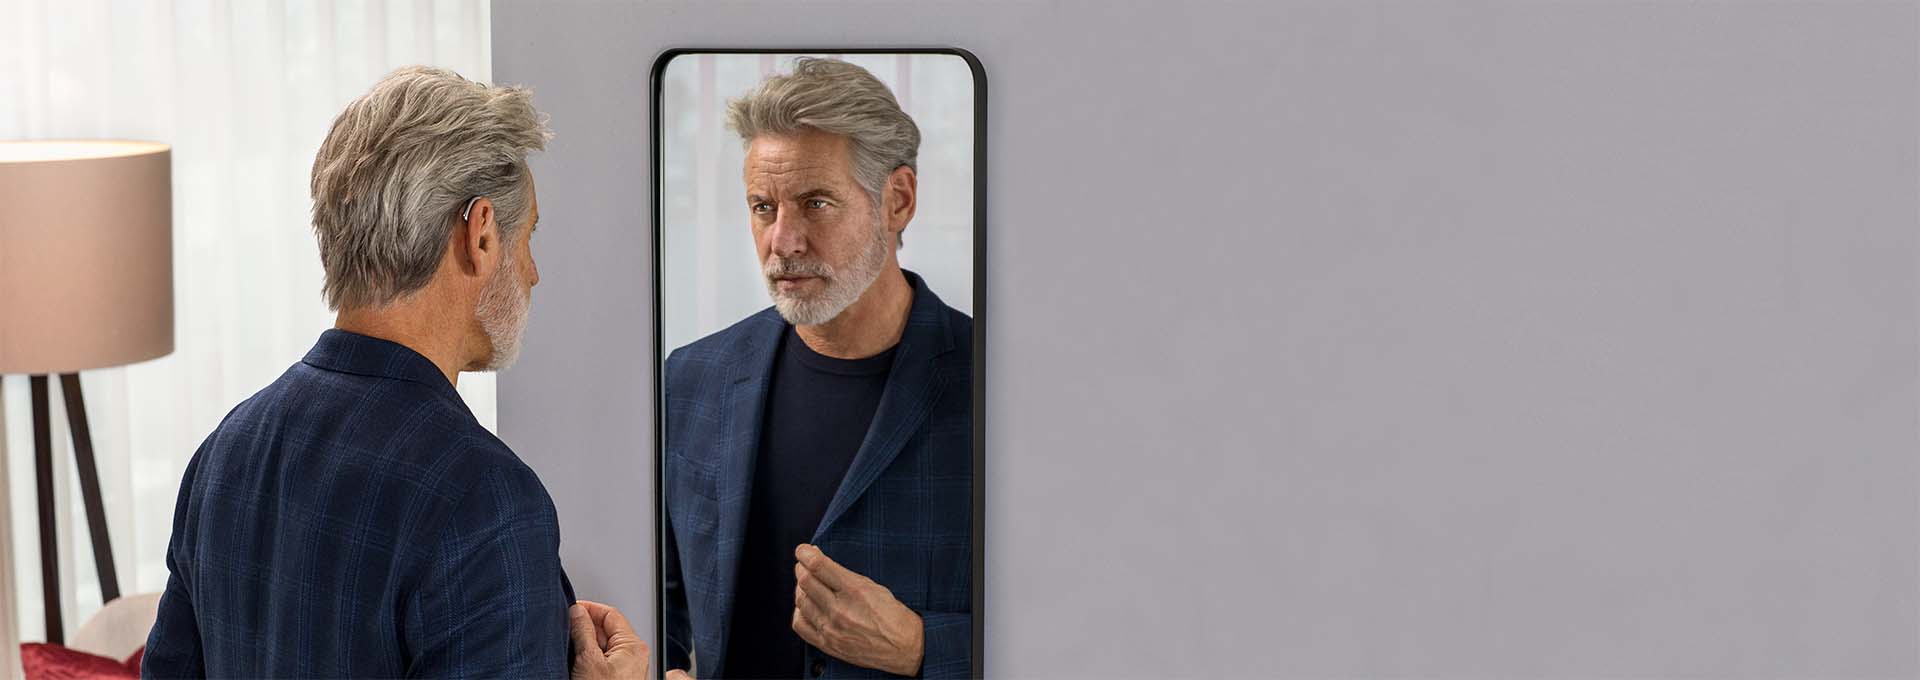 Hombre con audífonos miniBTE T R recargables de Bernafon de pie mirándose en un espejo, lleva un traje de chaqueta